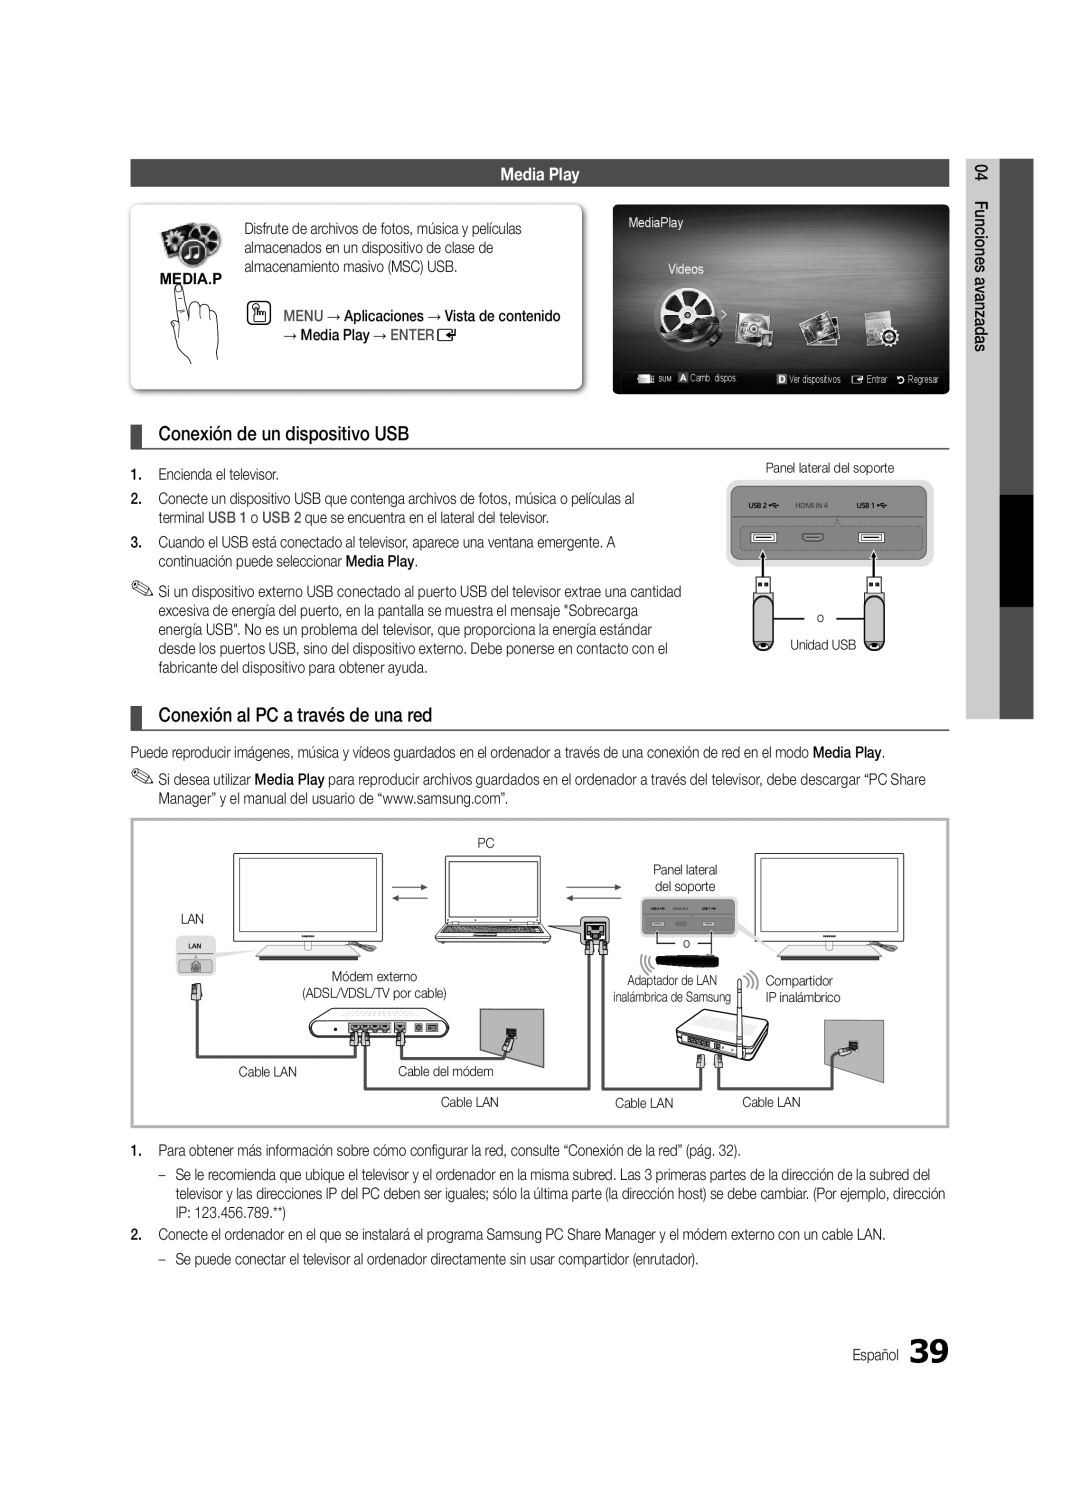 Samsung Series C9, BN68-03088A-01 Conexión de un dispositivo USB, Conexión al PC a través de una red, Media.P, Media Play 